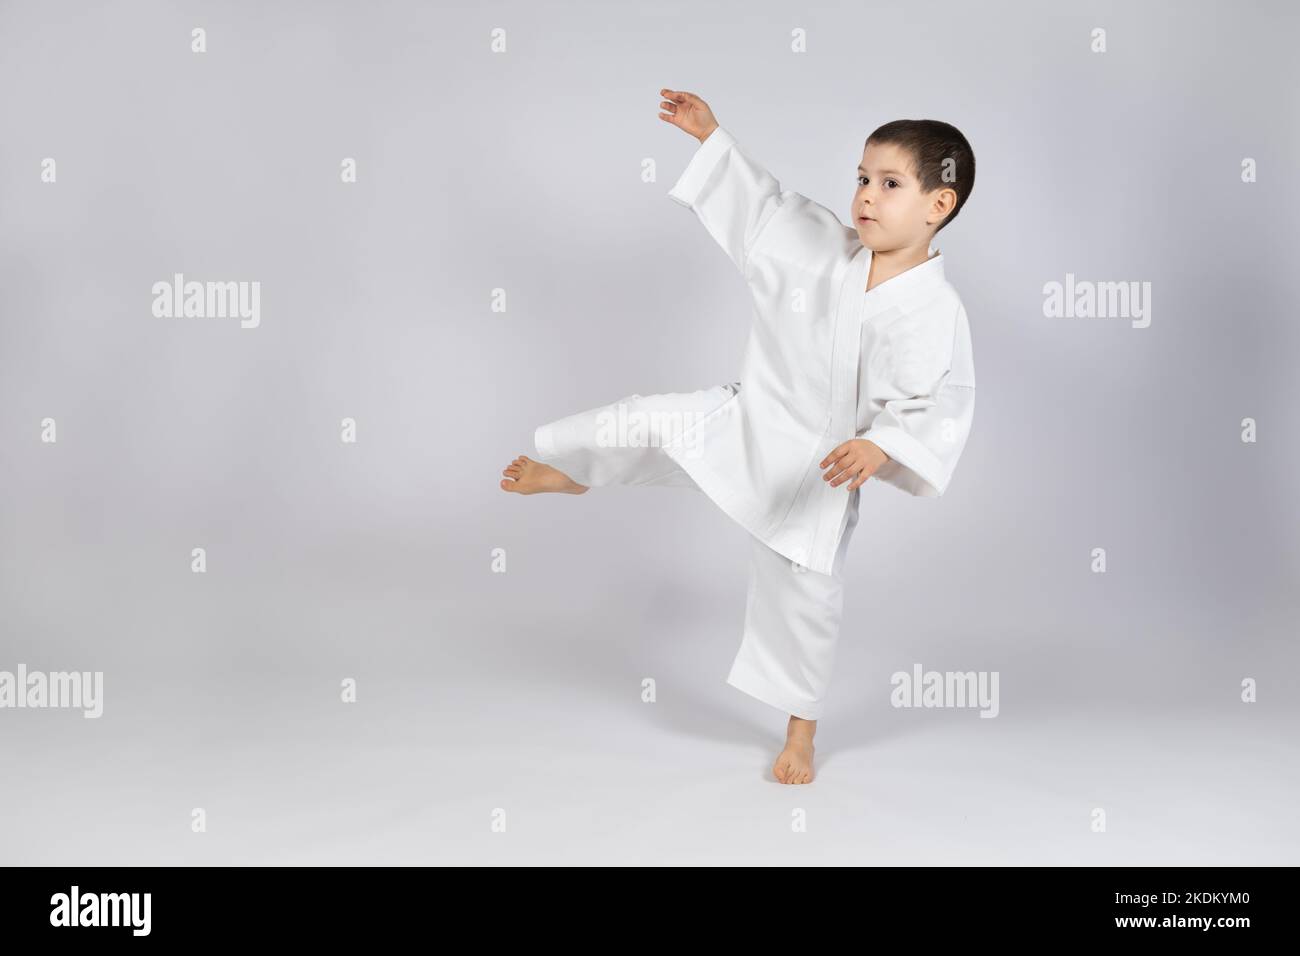 Un ragazzino in un kimono pratica il karate su uno sfondo bianco, calciando in avanti. Foto Stock